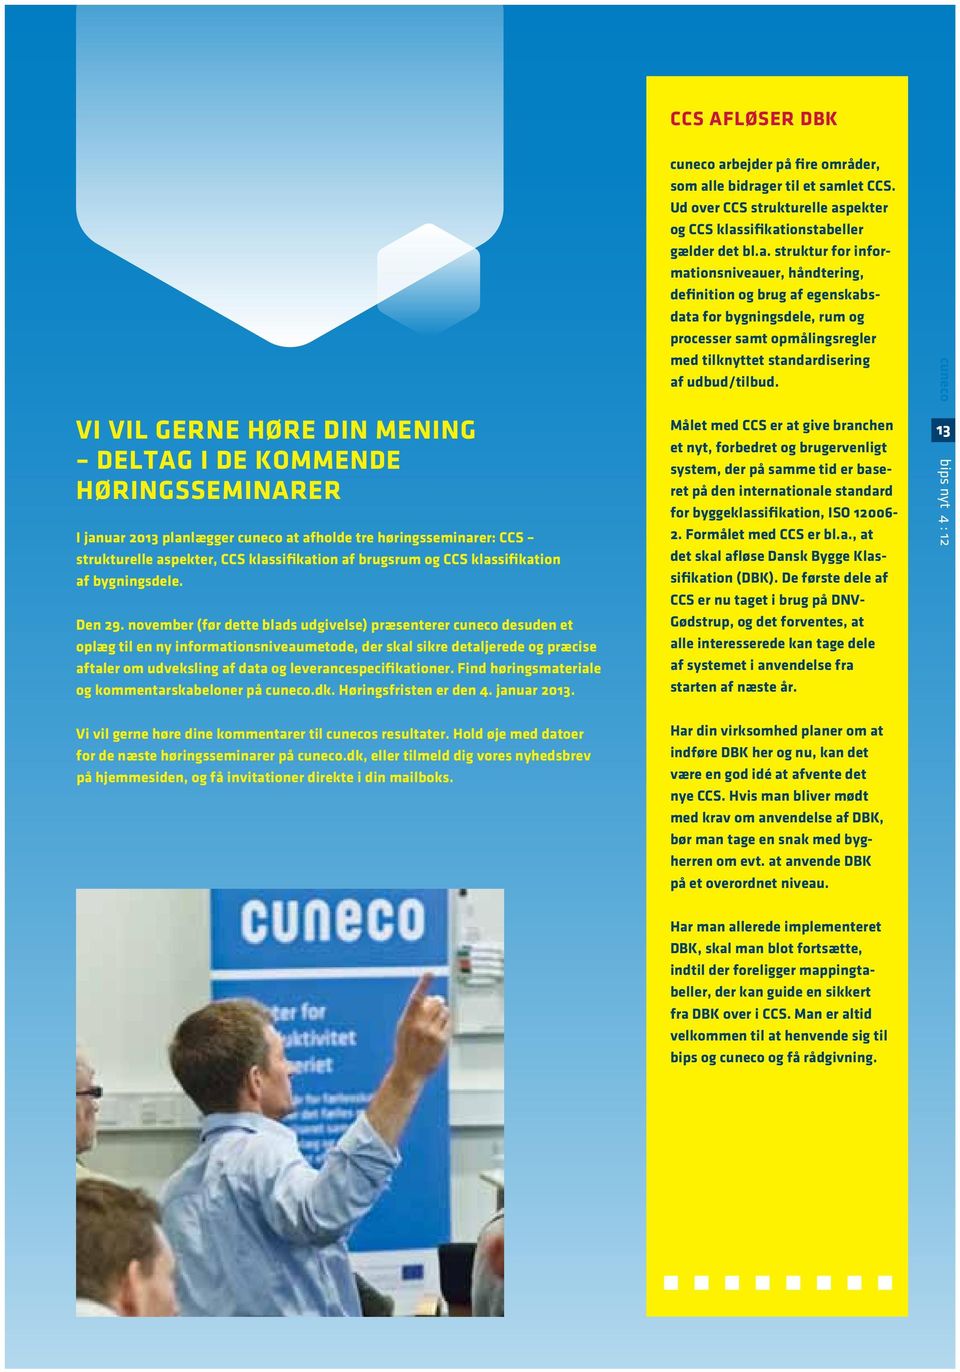 november (før dette blads udgivelse) præsenterer cuneco desuden et oplæg til en ny informationsniveaumetode, der skal sikre detaljerede og præcise aftaler om udveksling af data og